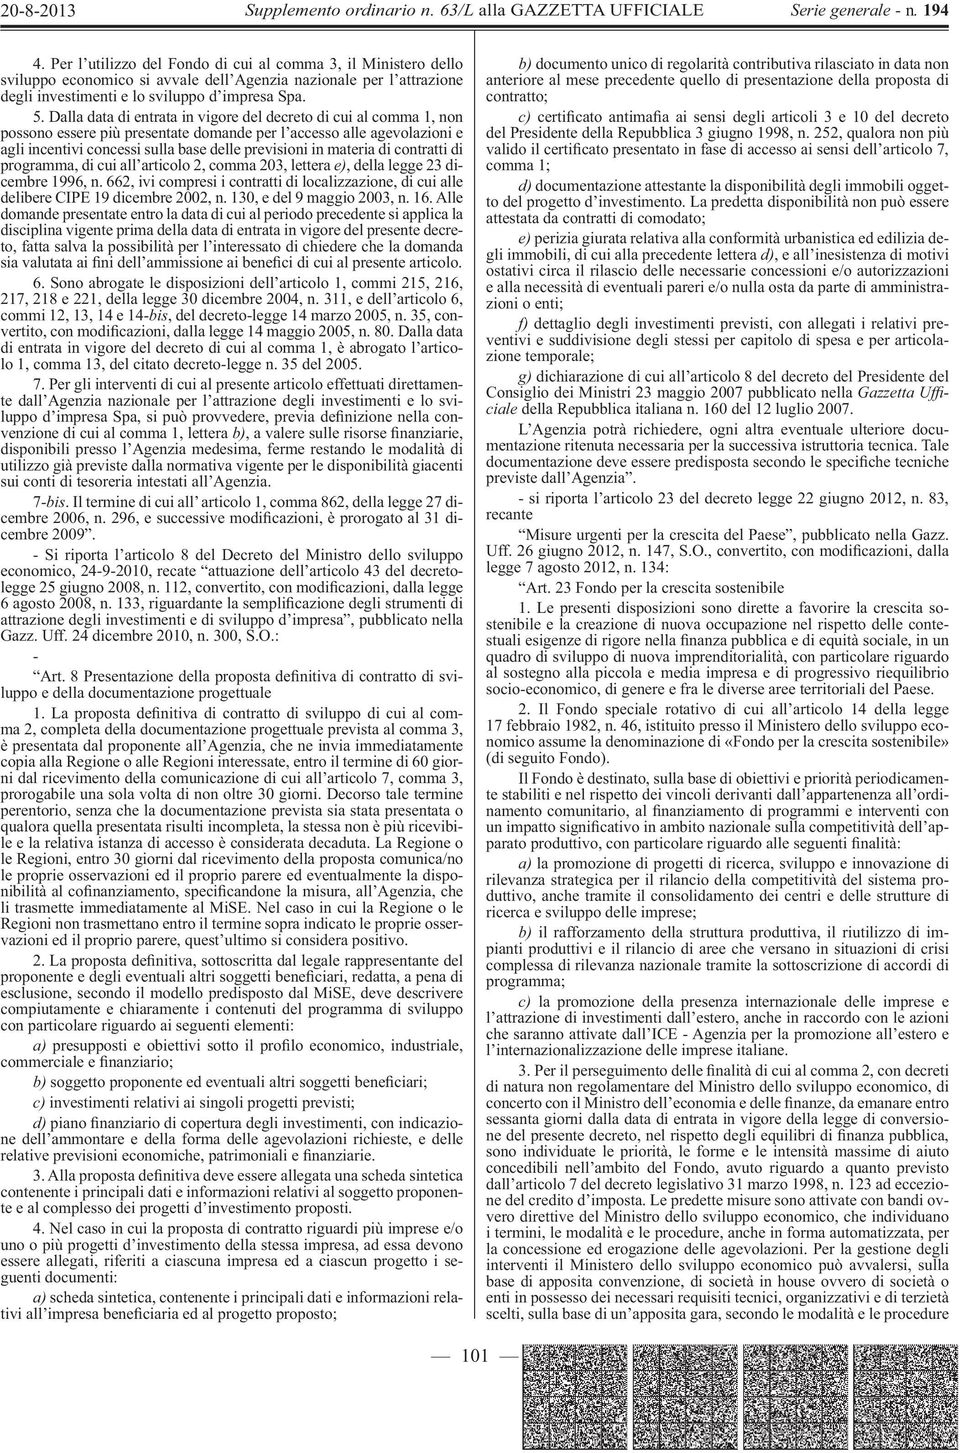 materia di contratti di programma, di cui all articolo 2, comma 203, lettera e), della legge 23 dicembre 1996, n.